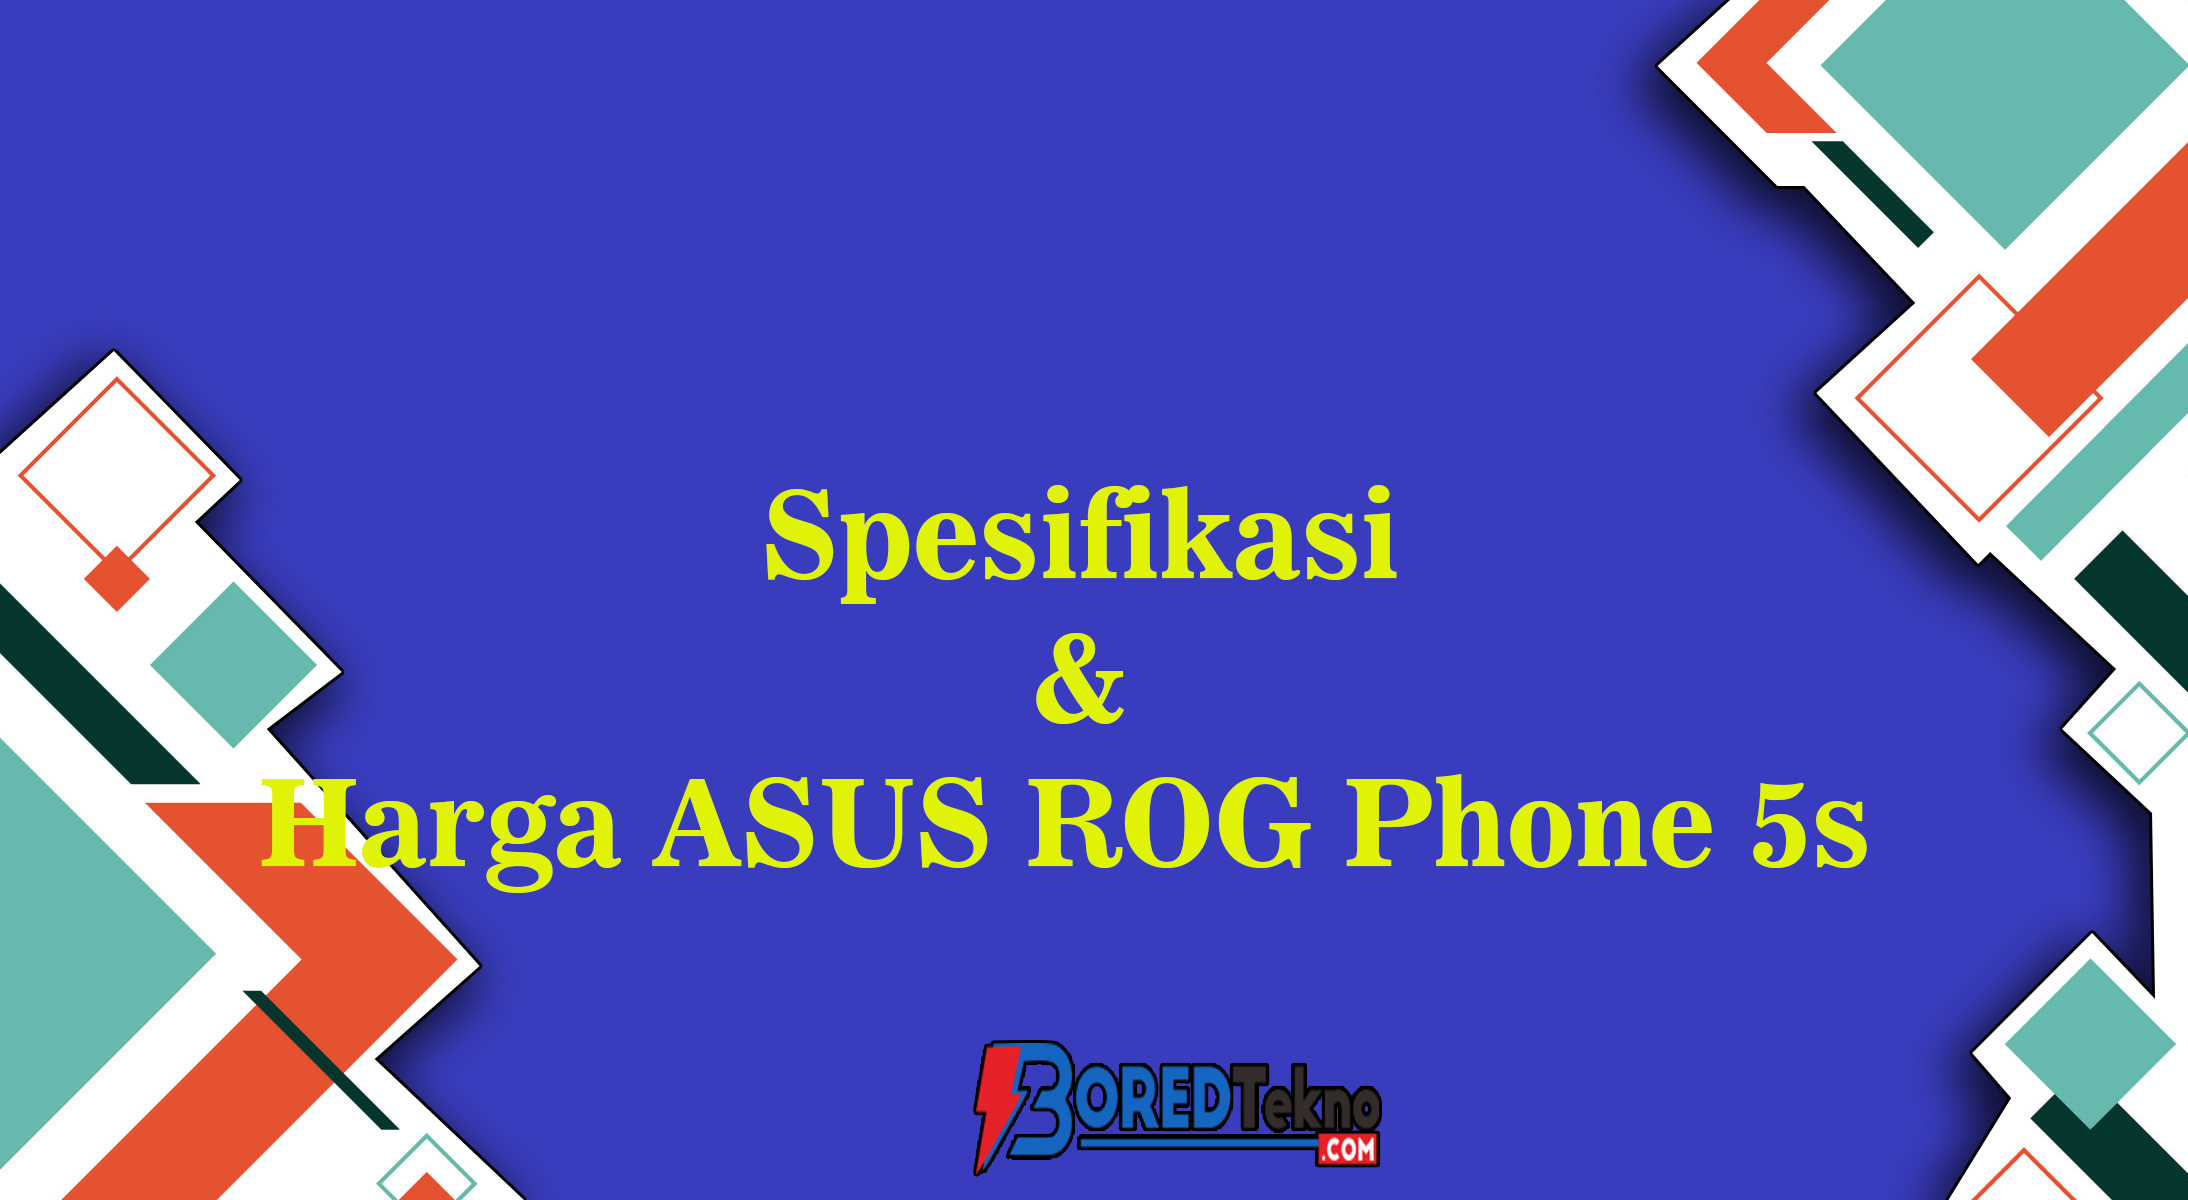 Spesifikasi & Harga ASUS ROG Phone 5s